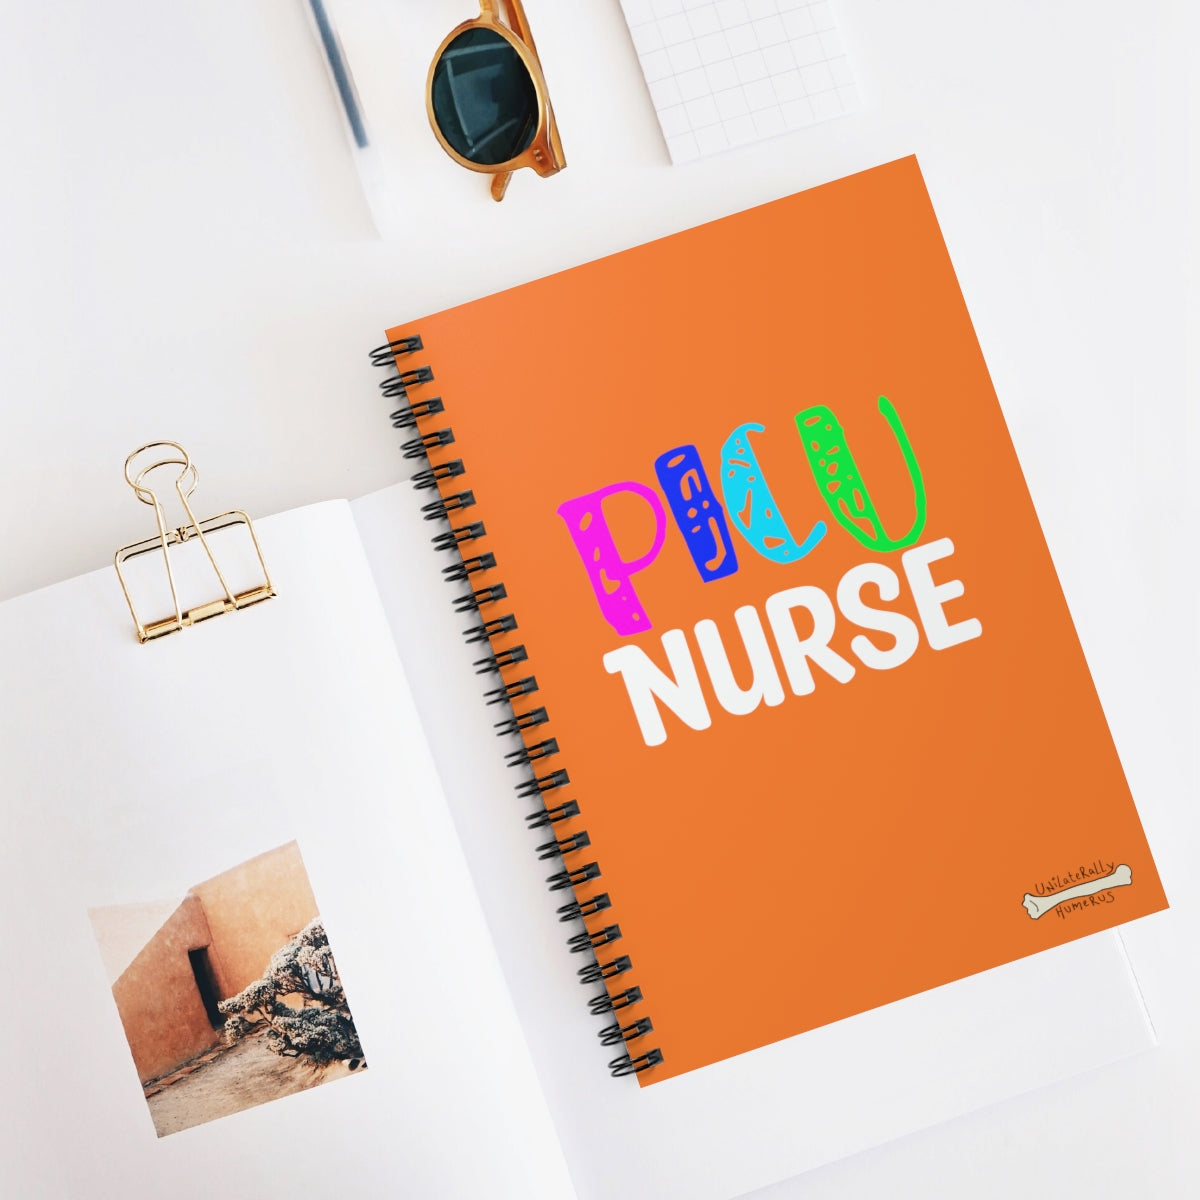 PICU Nurse Spiral Notebook - Ruled Line